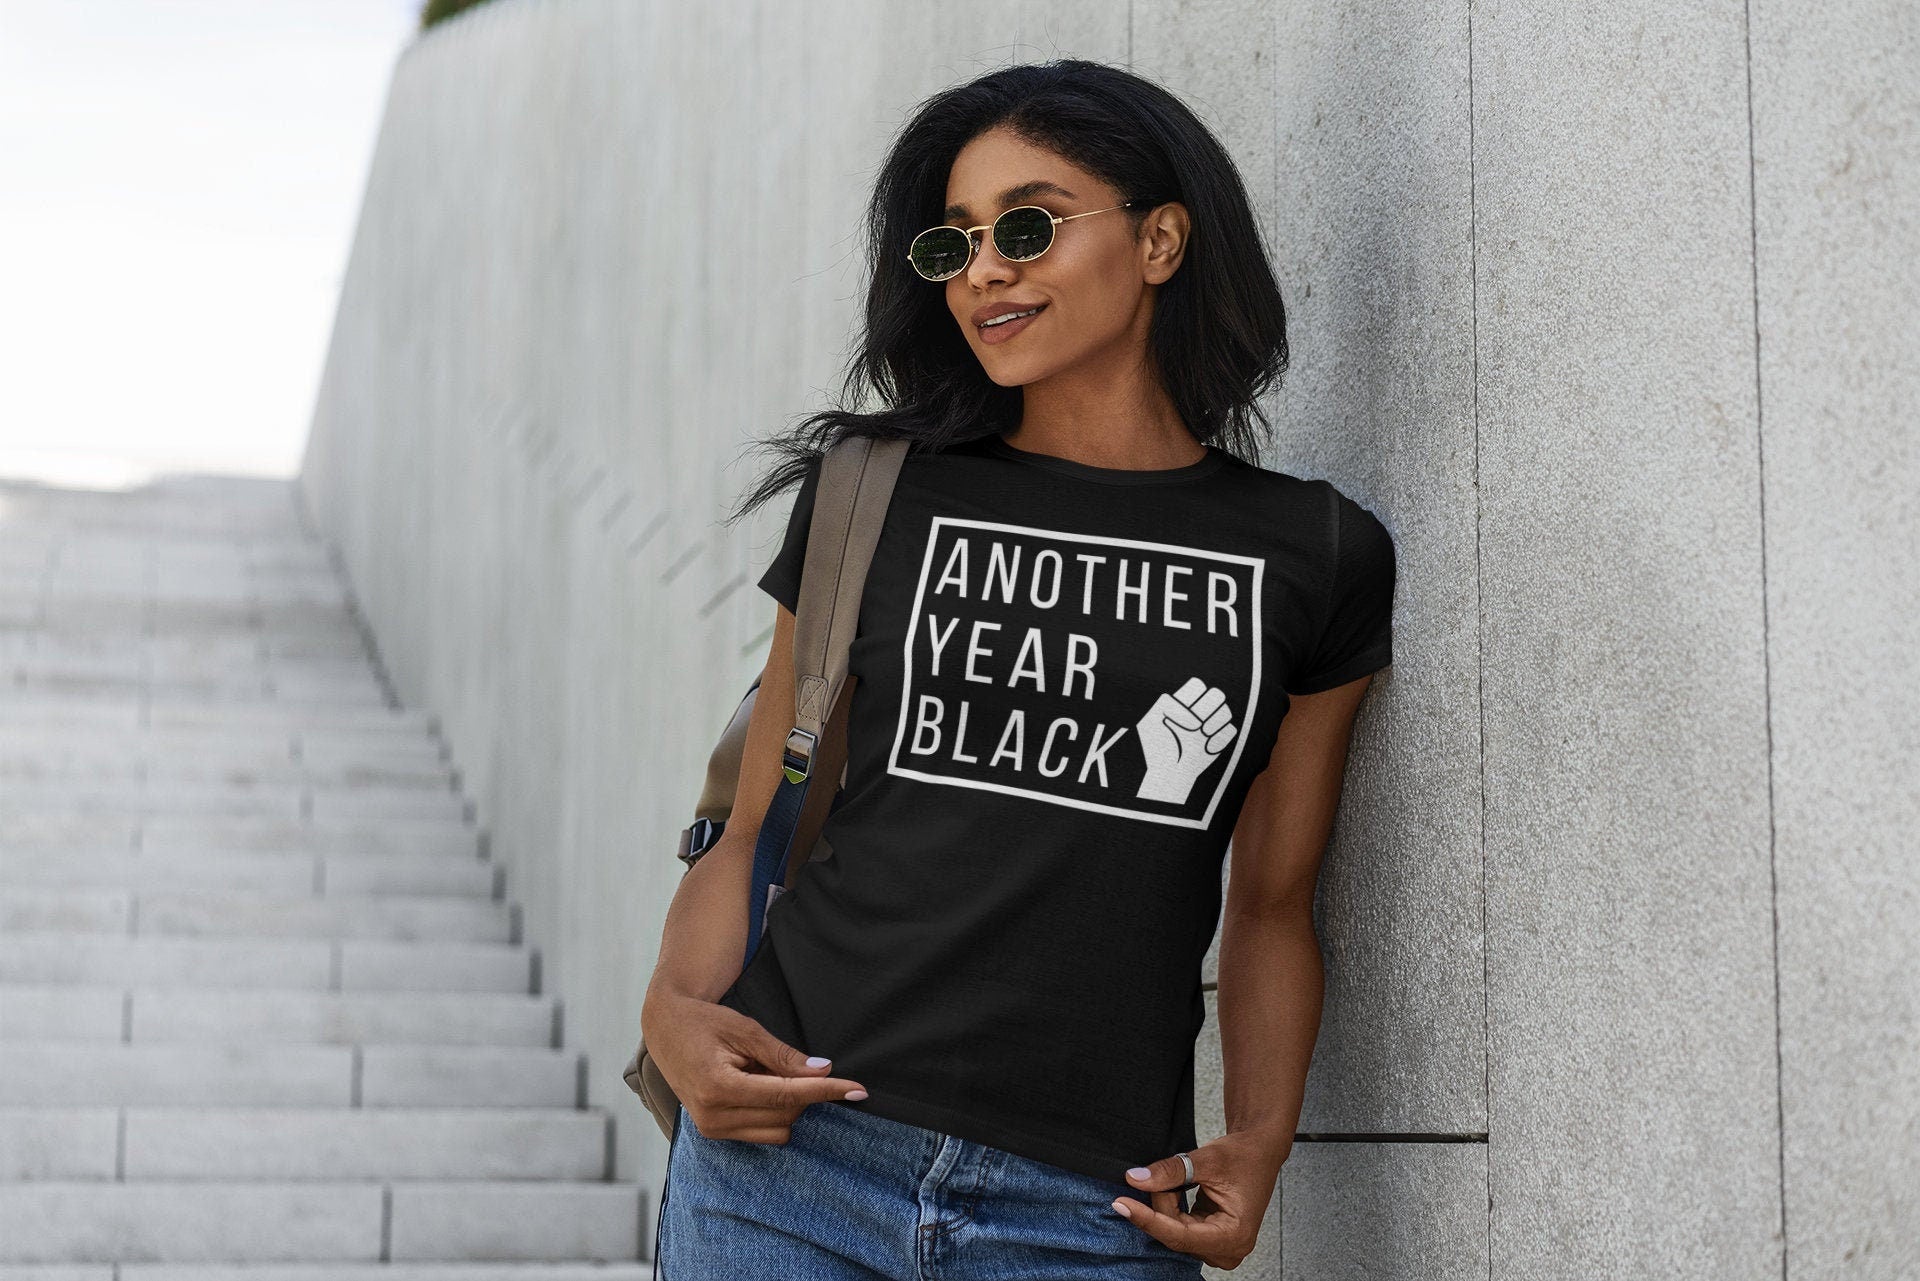 Black King Shirt/ Black Queen shirt/Black Power Shirt/ Black Pride Shirt /Melanin Shirt/Melanin Poppin Shirt/Black Girl Magic Shirt